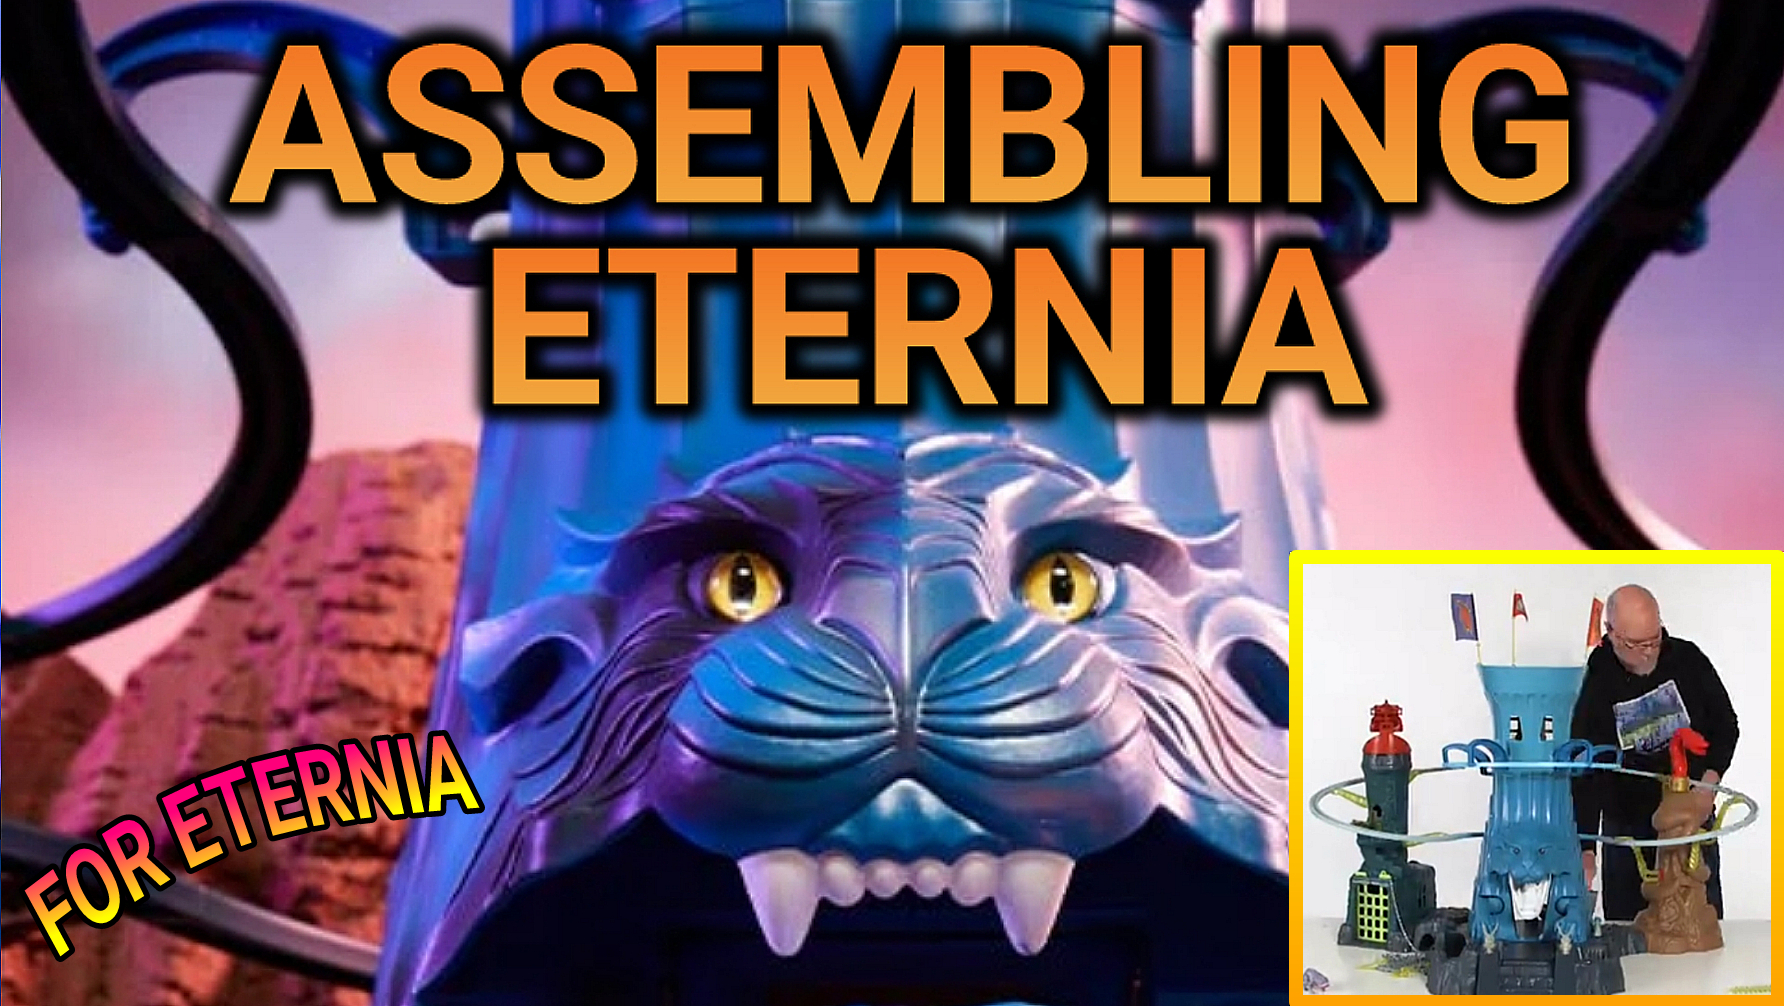 ASSEMBLING ETERNIA! A new Mattel Creations Eternia Playset  backer video shows how Eternia is assembled